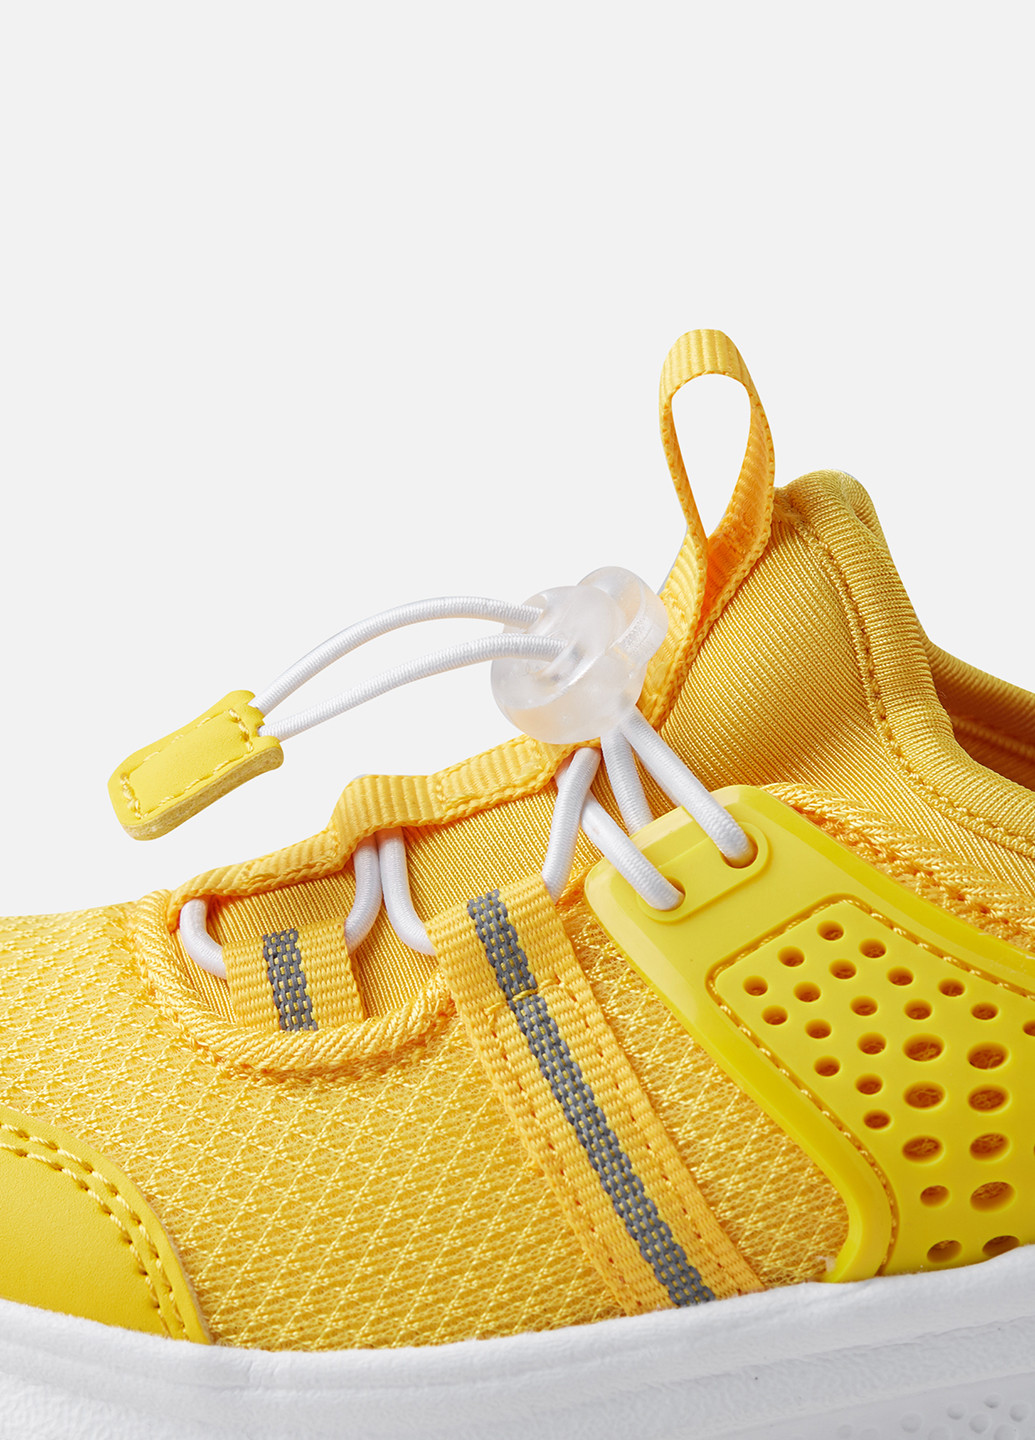 Жовті осінні кросівки на шнурках Reima Luontuu